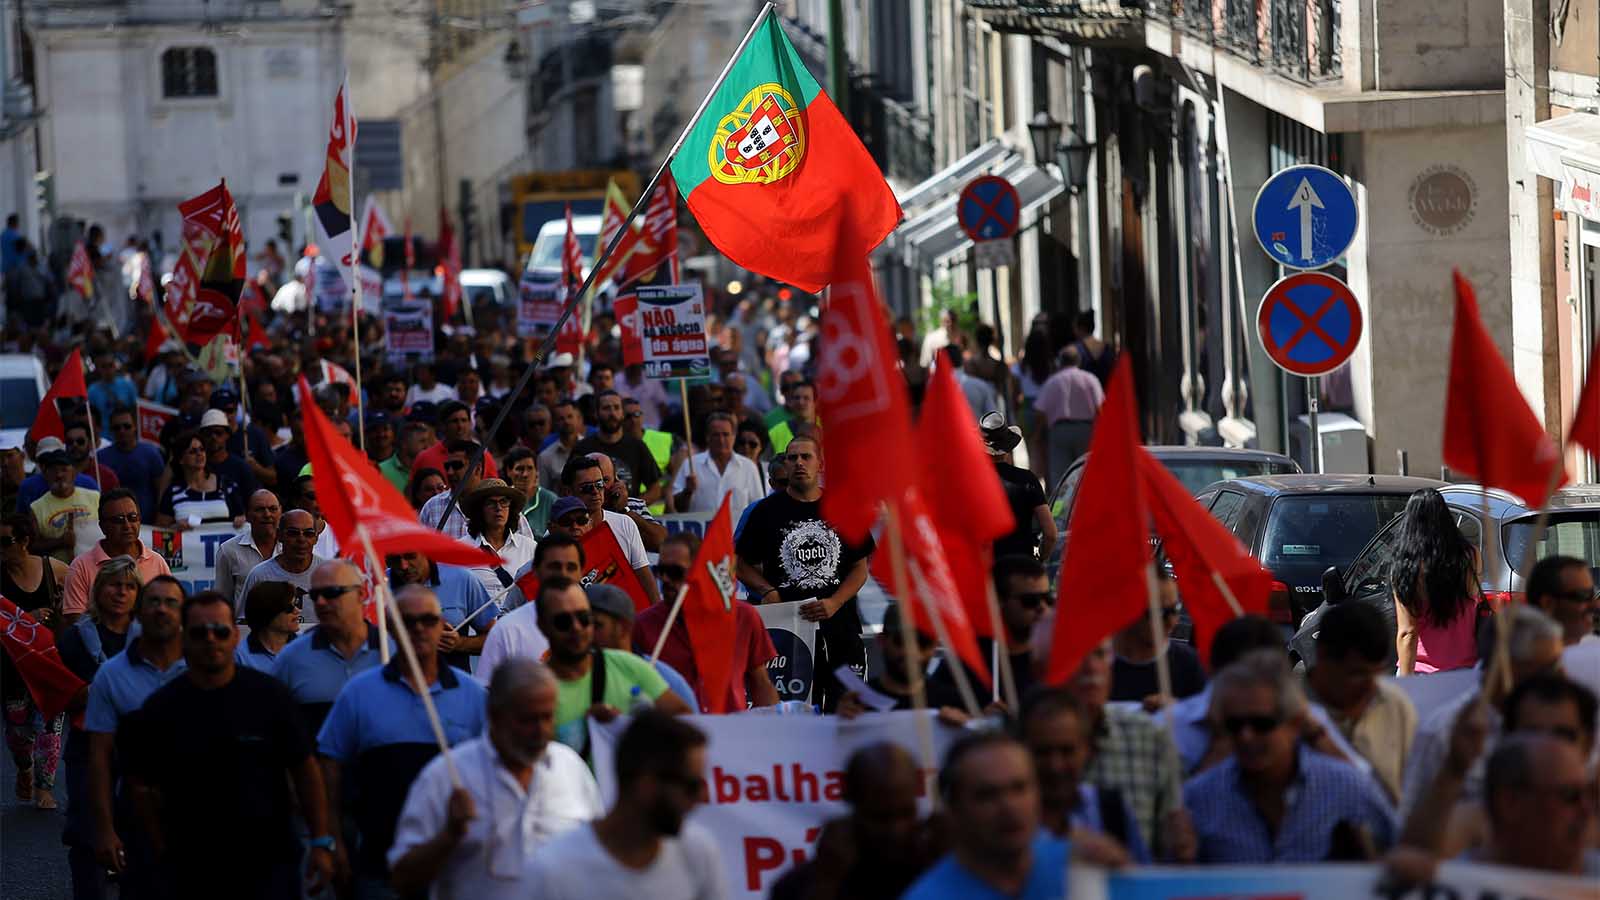 פורטוגלים מפגינים ברחובות נגד המדיניות הכלכלית של הממשלה, יולי 2015 (AP Photo/Francisco Seco)